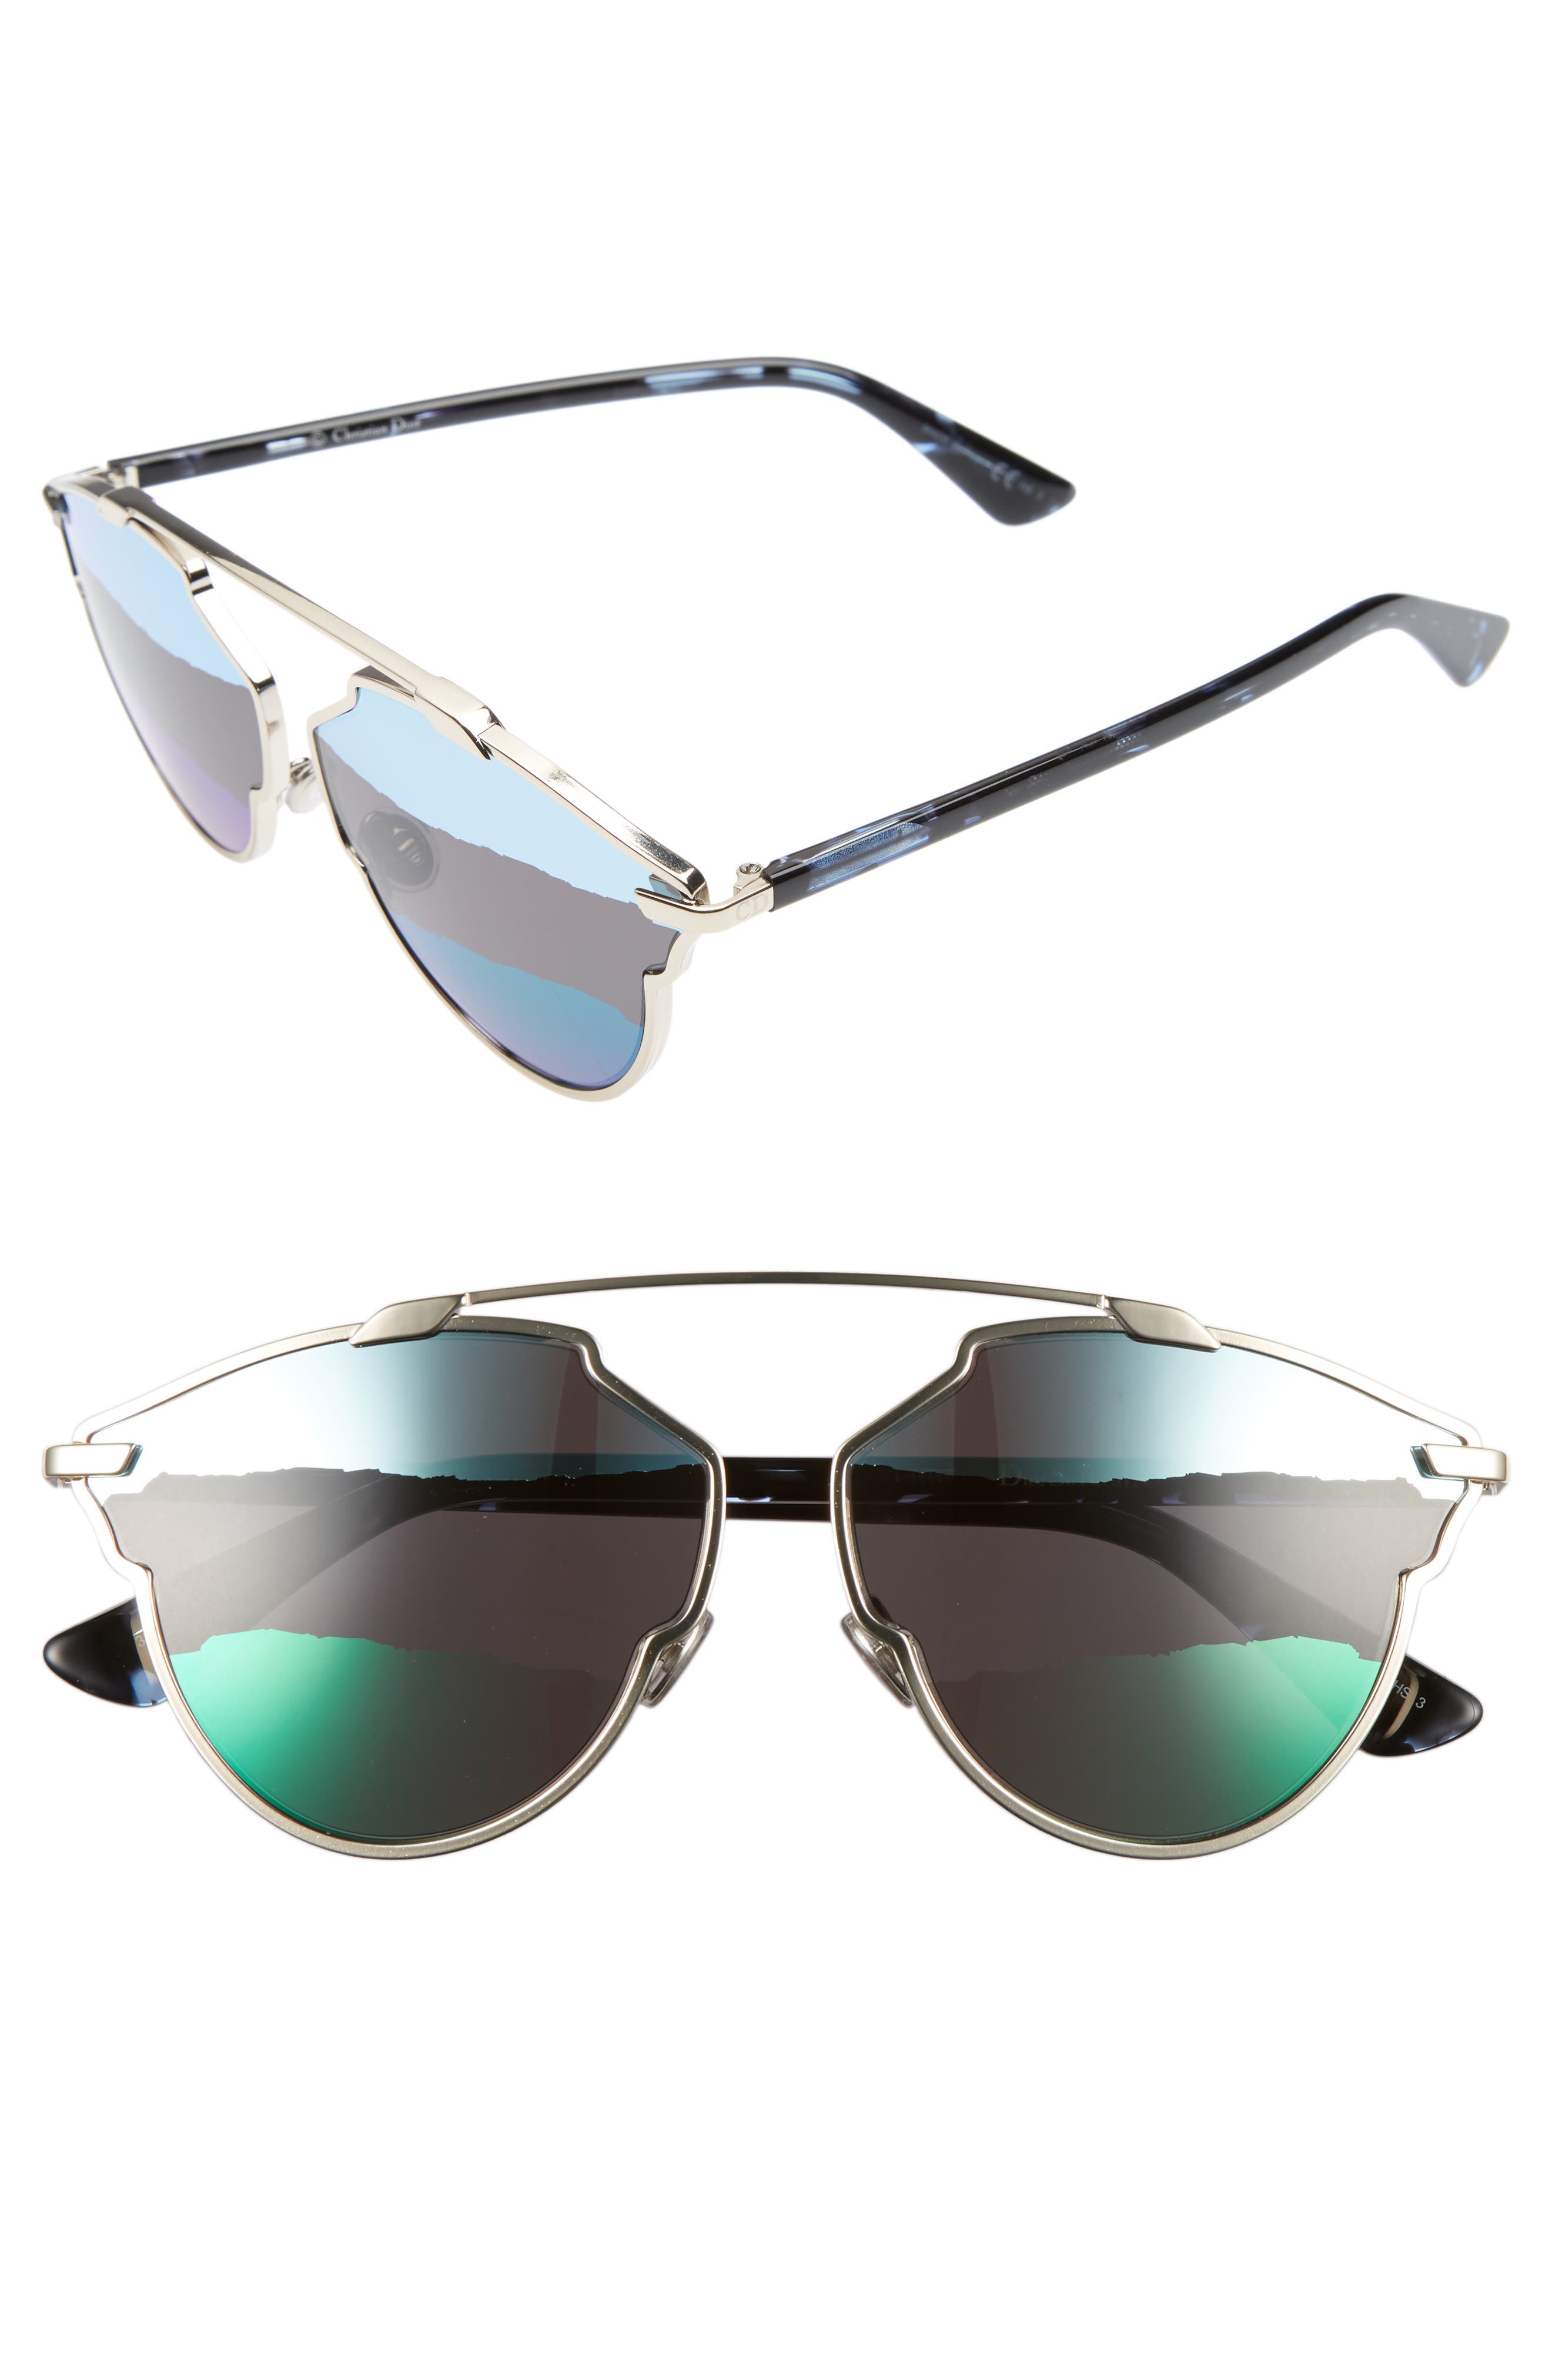 dior brow bar sunglasses